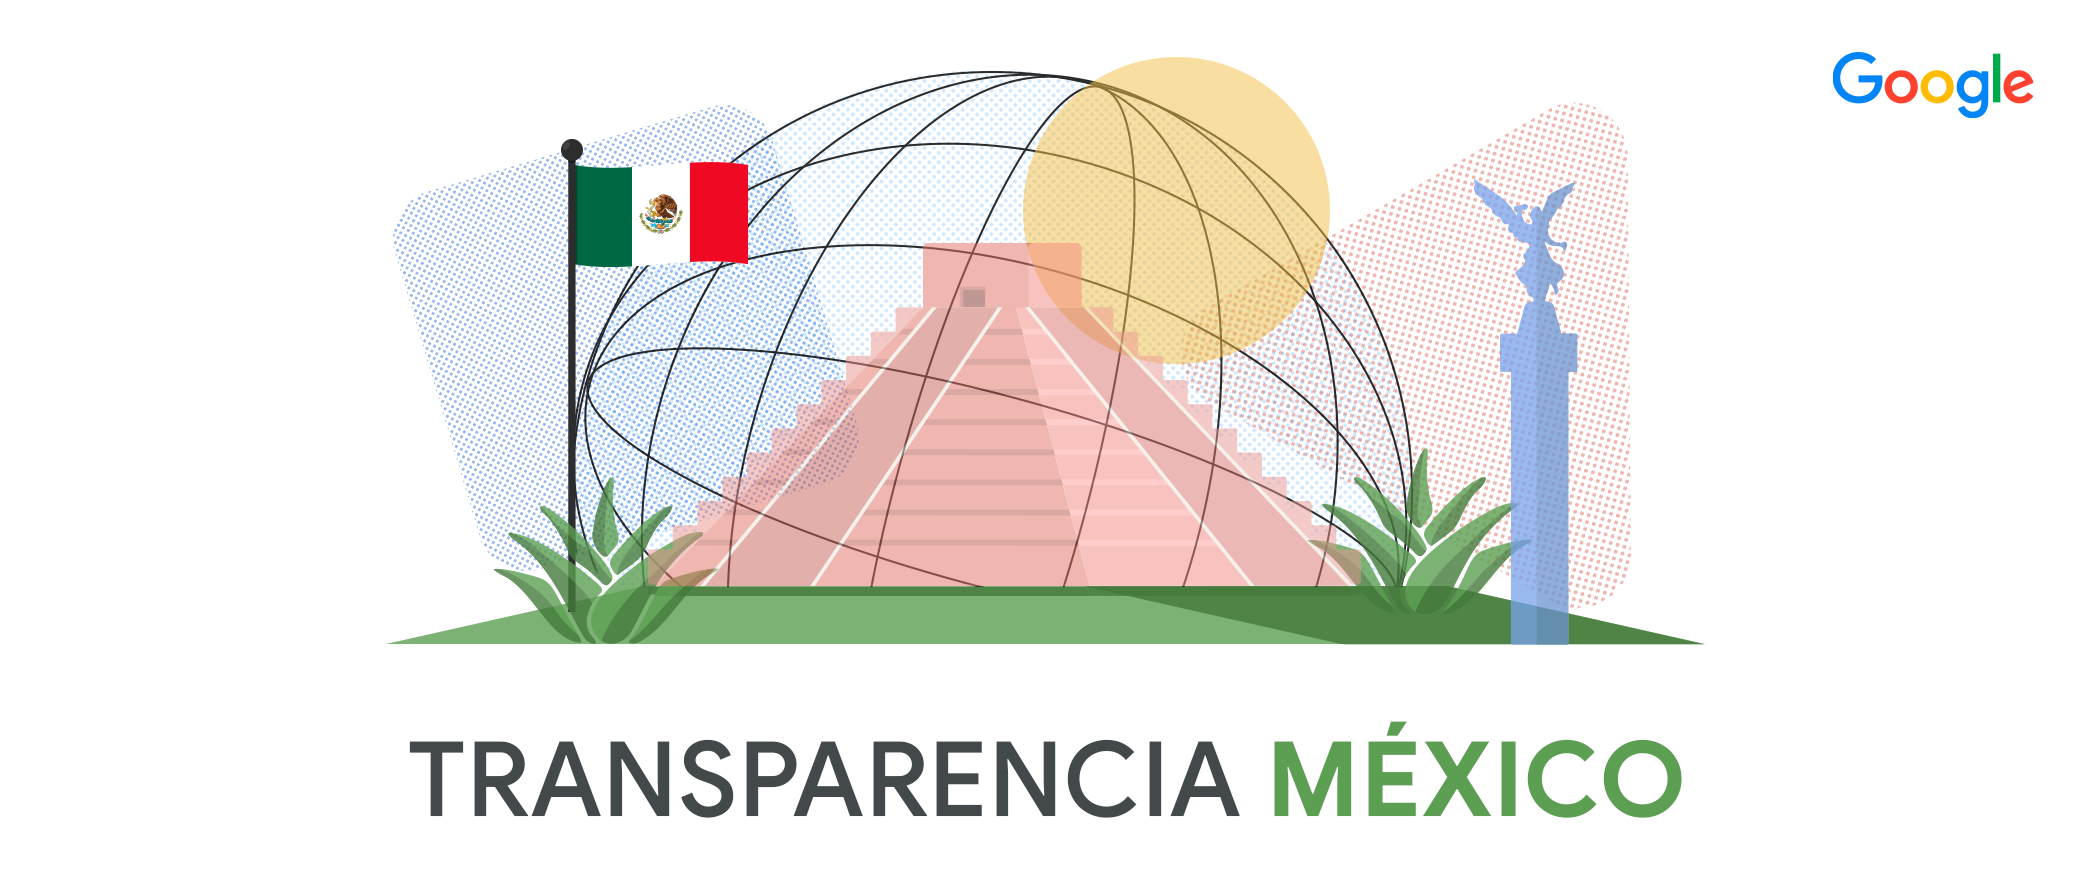 Transparencia Mexico